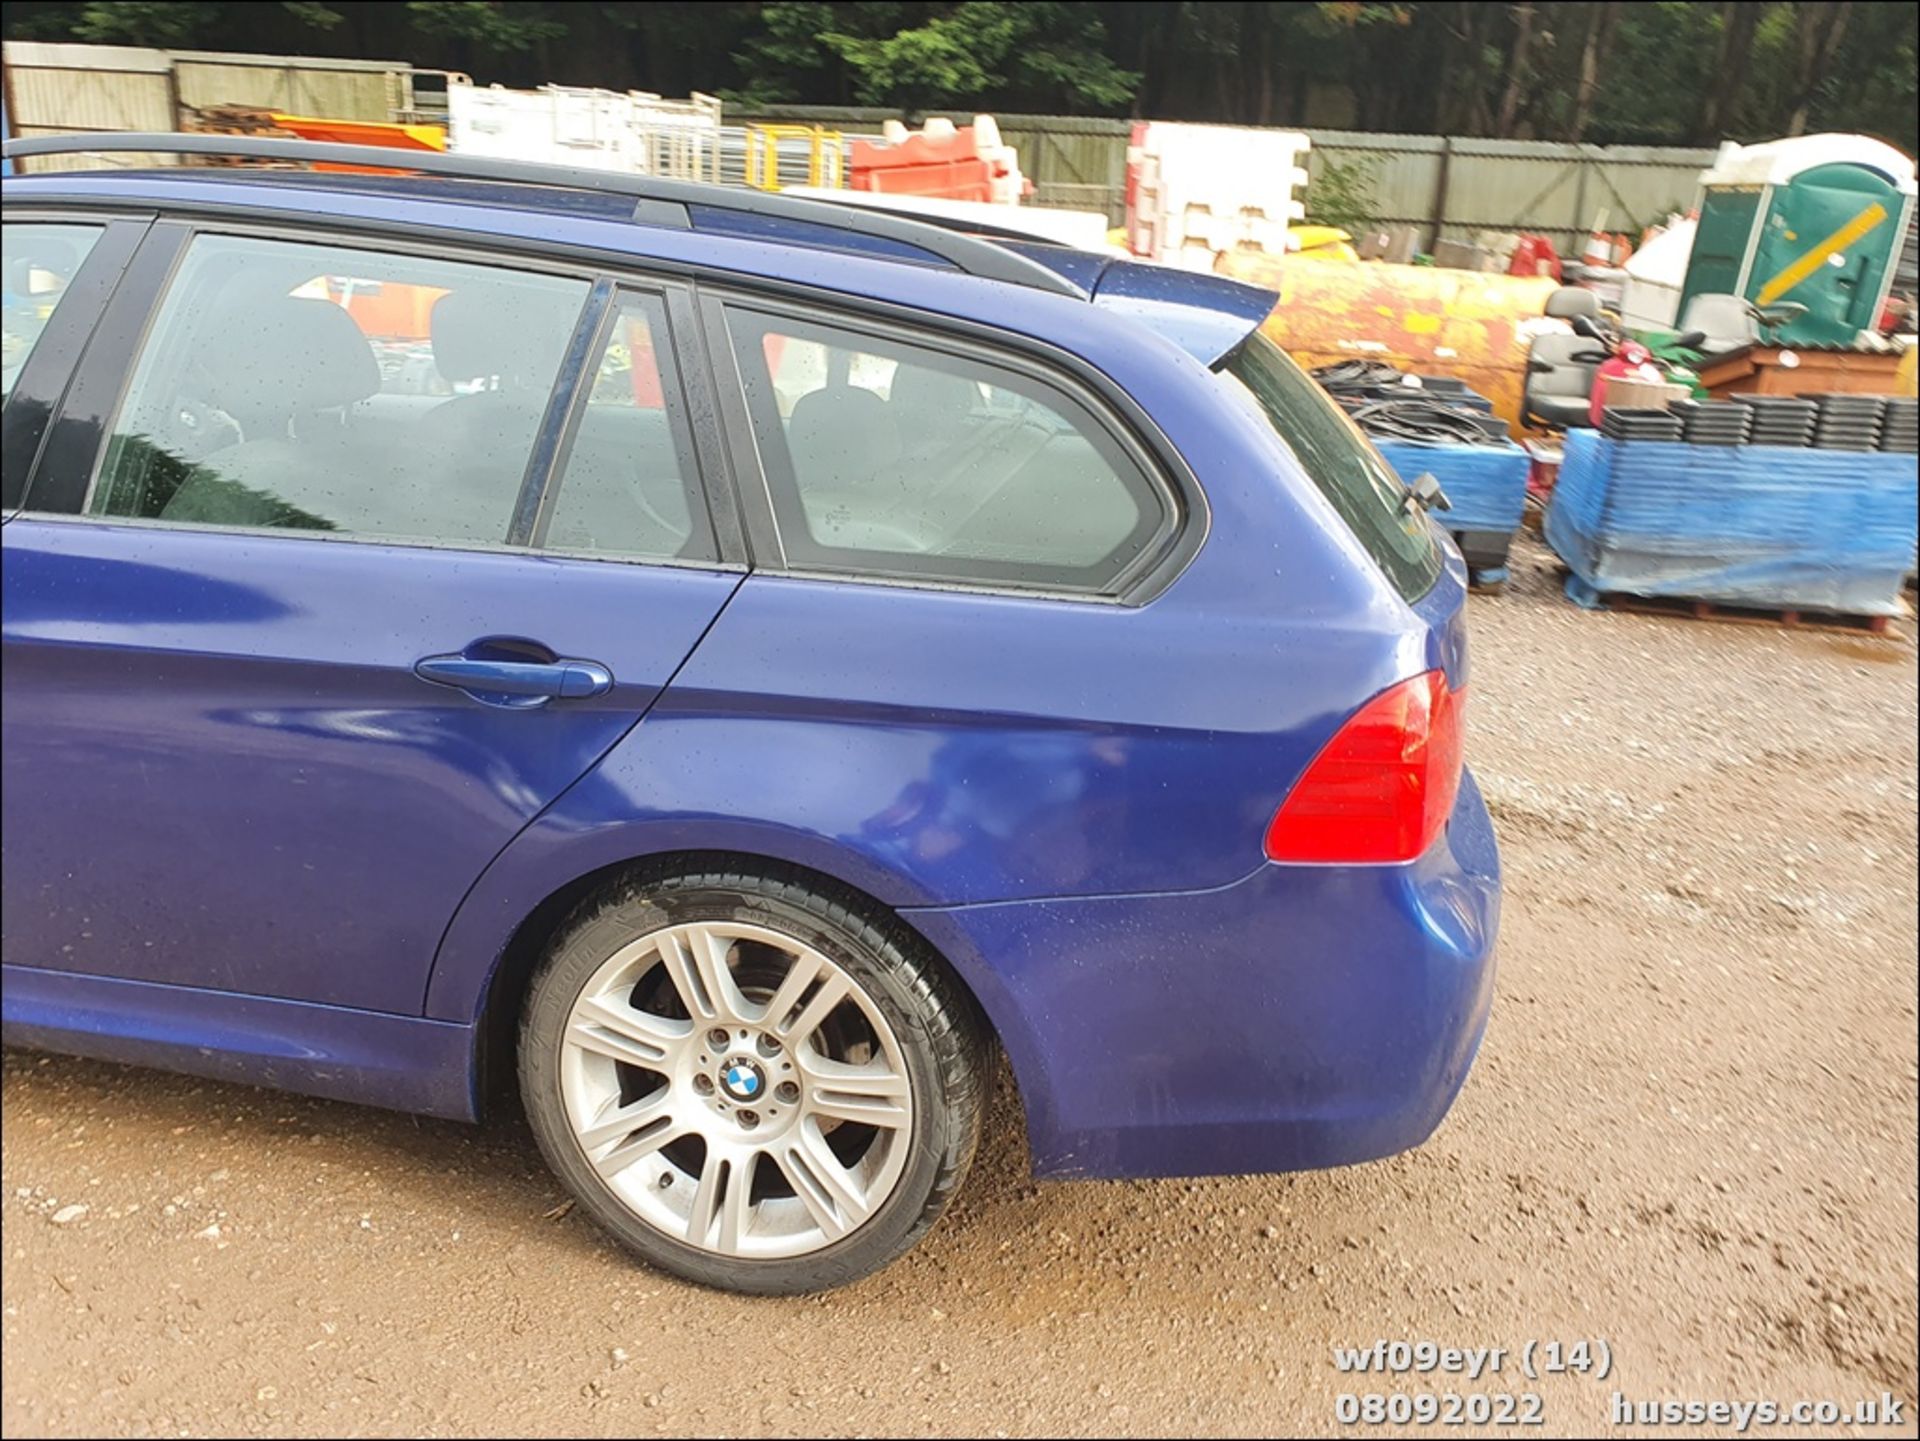 09/09 BMW 318I M SPORT TOURING - 1995cc 5dr Estate (Blue, 122k) - Image 14 of 47